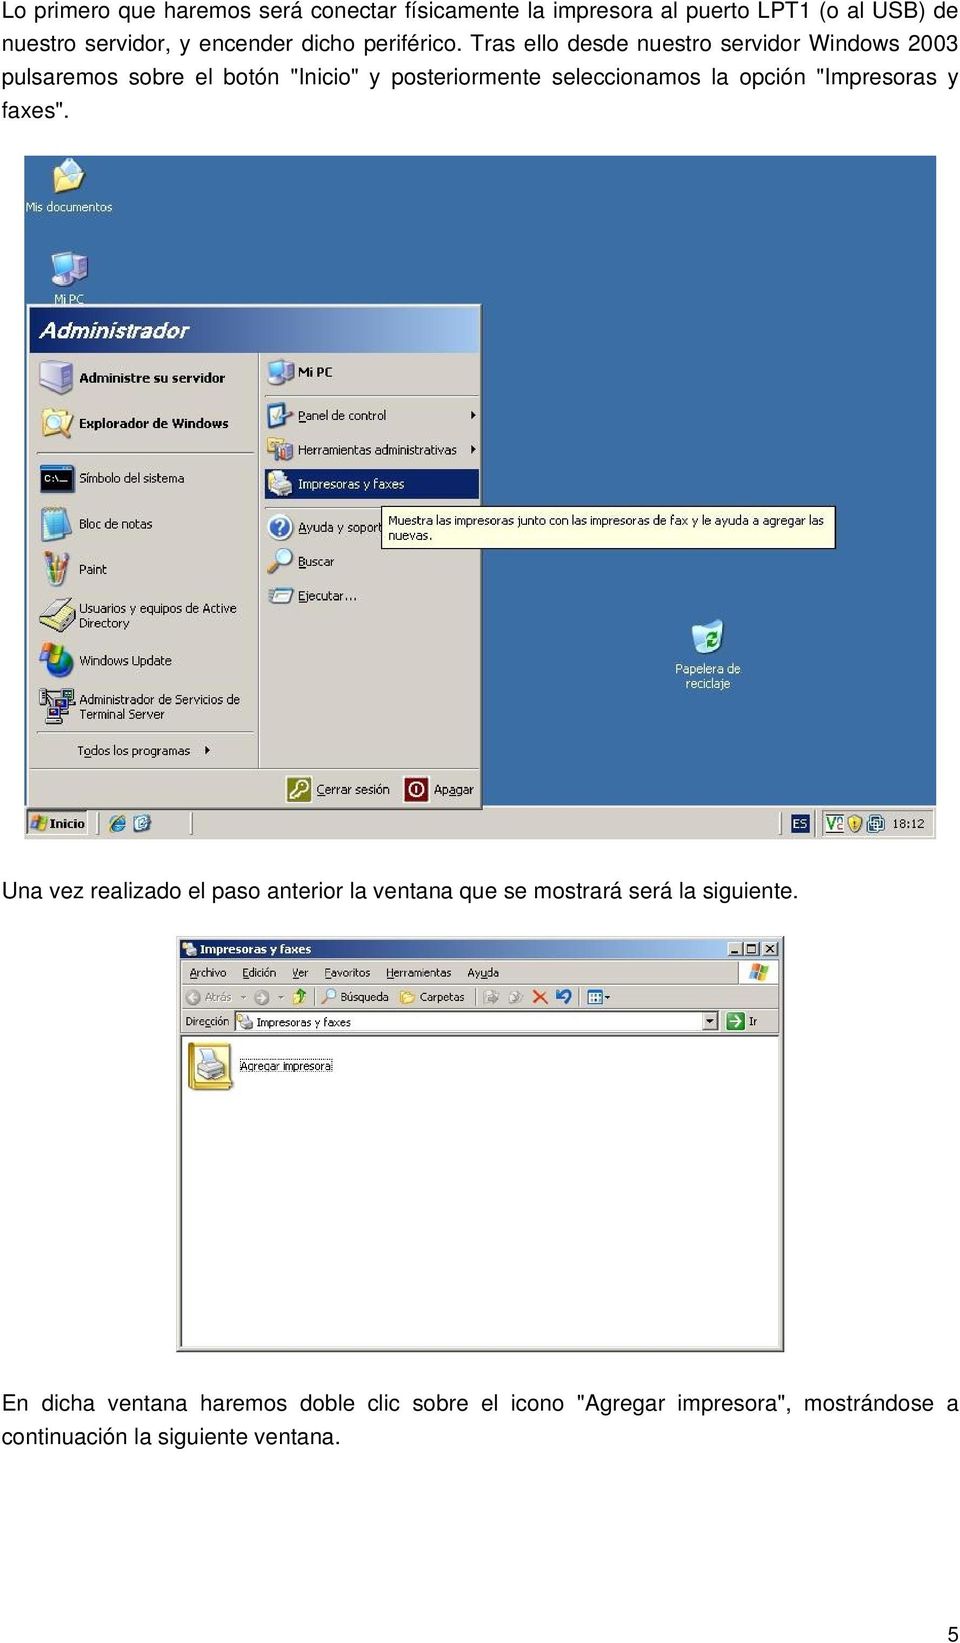 Tras ello desde nuestro servidor Windows 2003 pulsaremos sobre el botón "Inicio" y posteriormente seleccionamos la opción